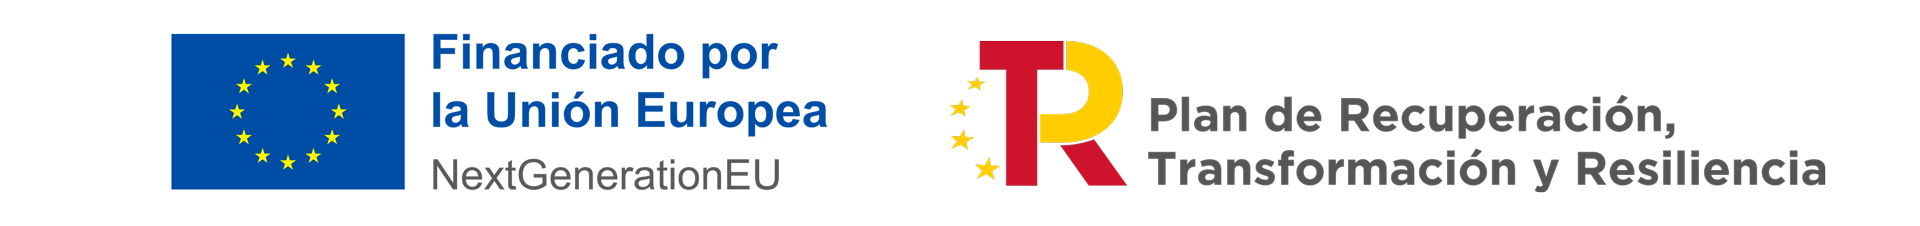 Logotipo Unión Europea - NextGenerationEU + Logo del Plan de Recuperación, Transformación y Resiliencia